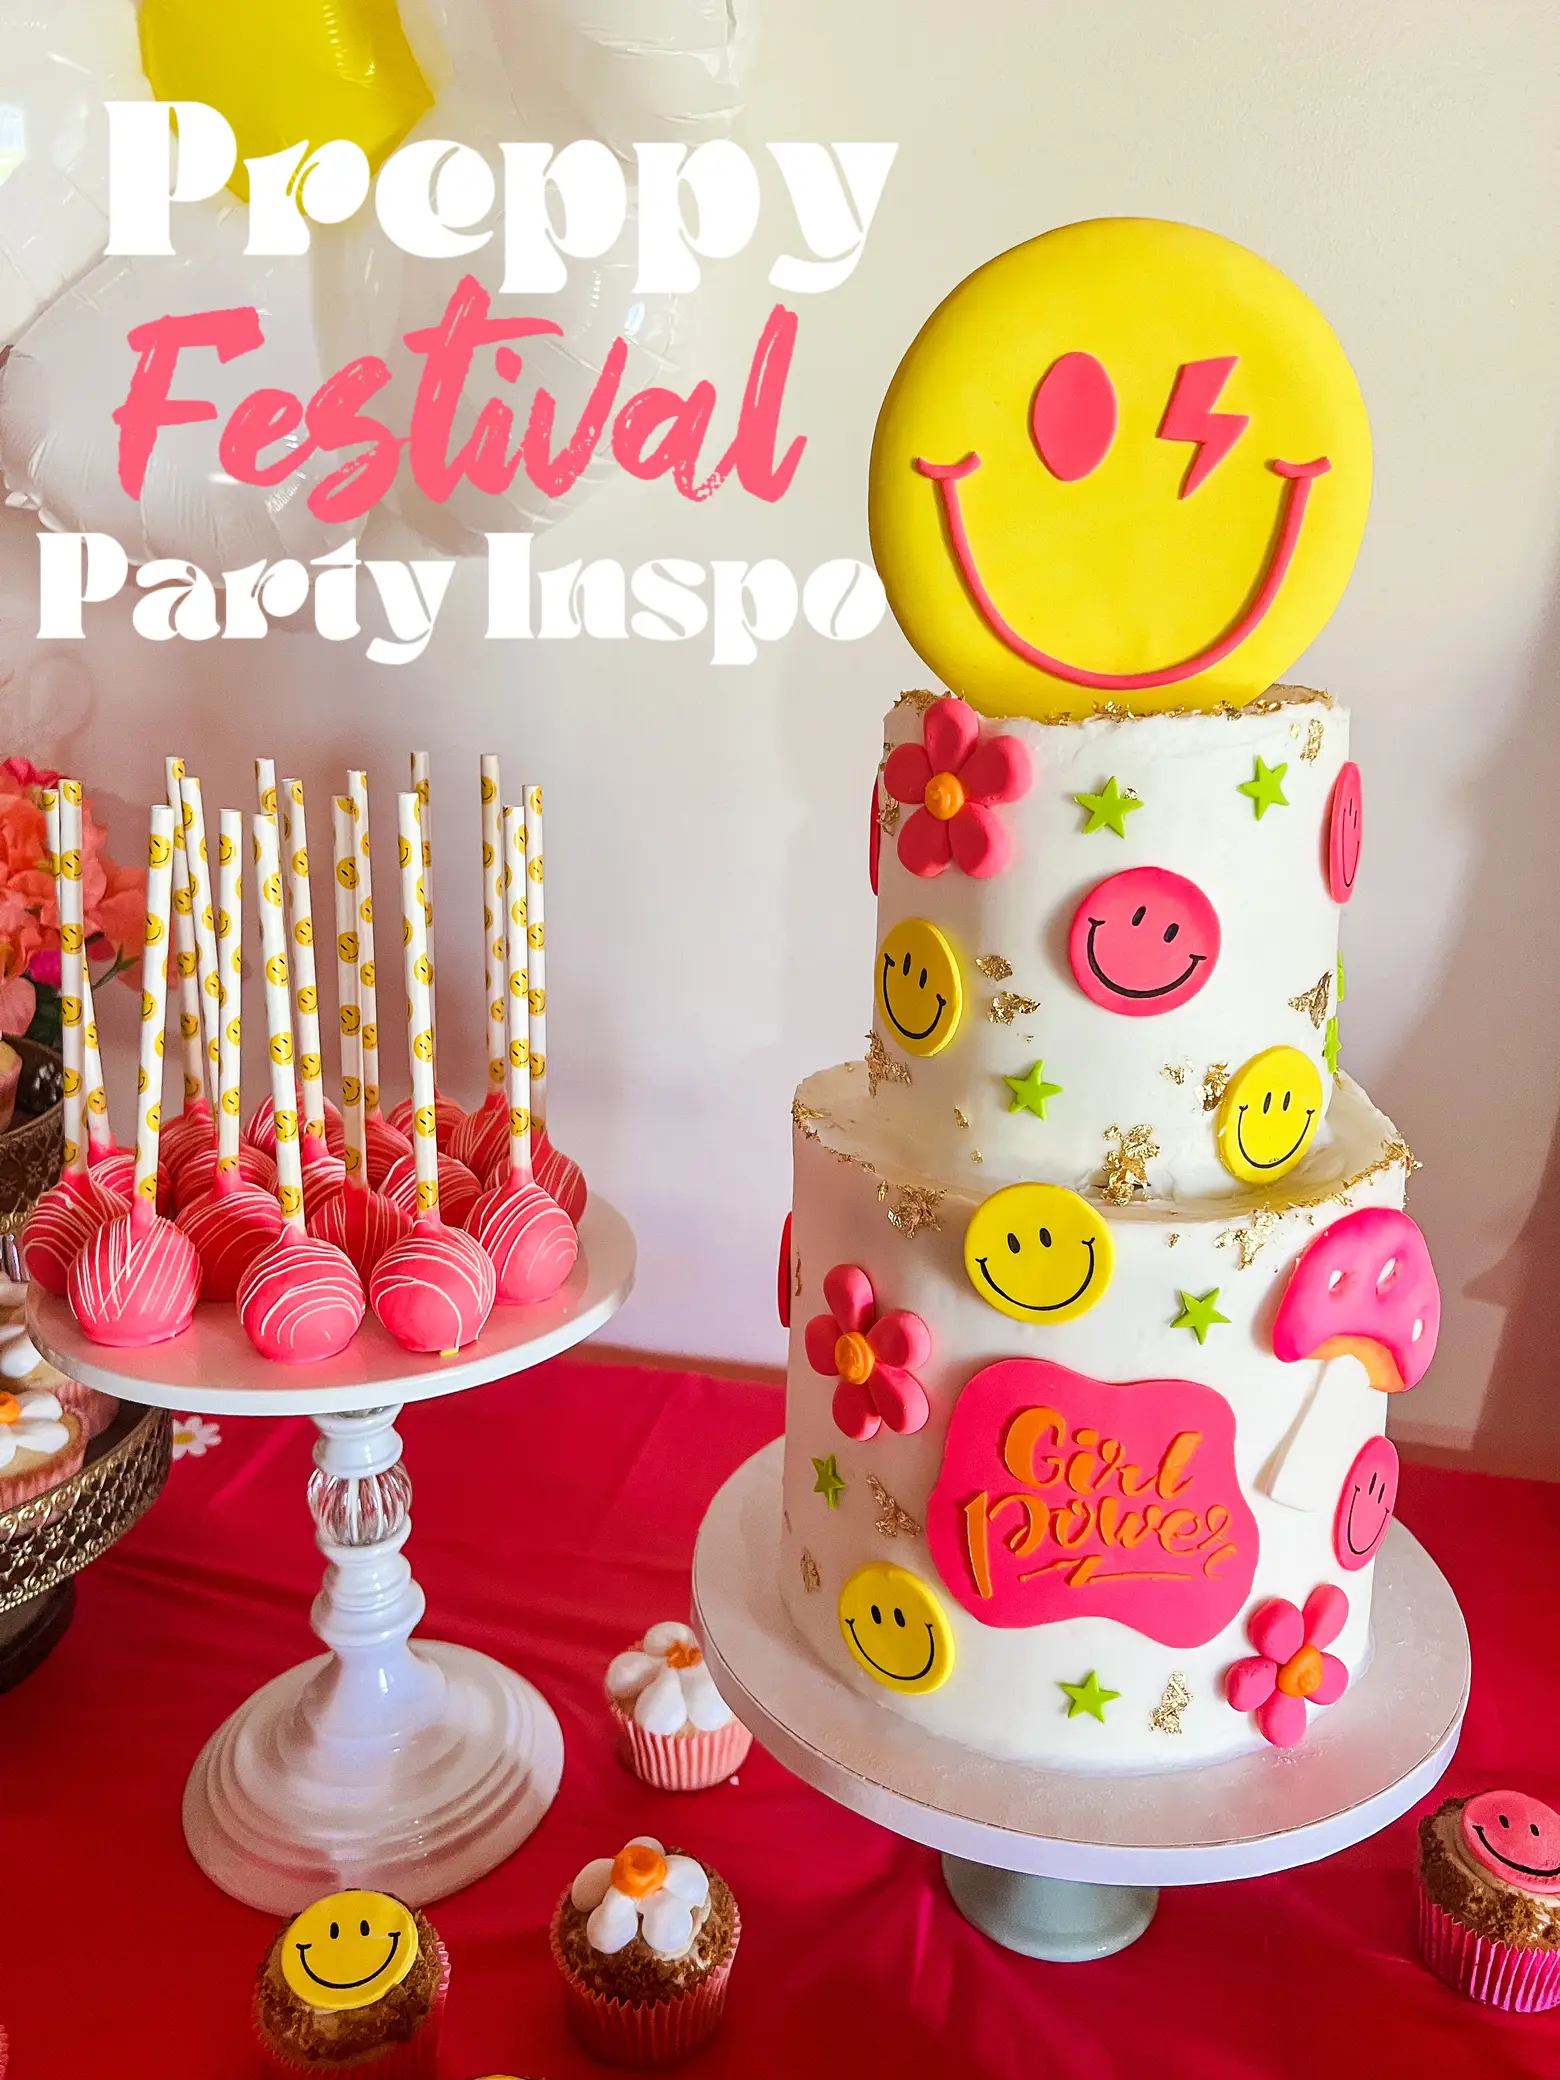 Preppy Festival Birthday Party Inspo